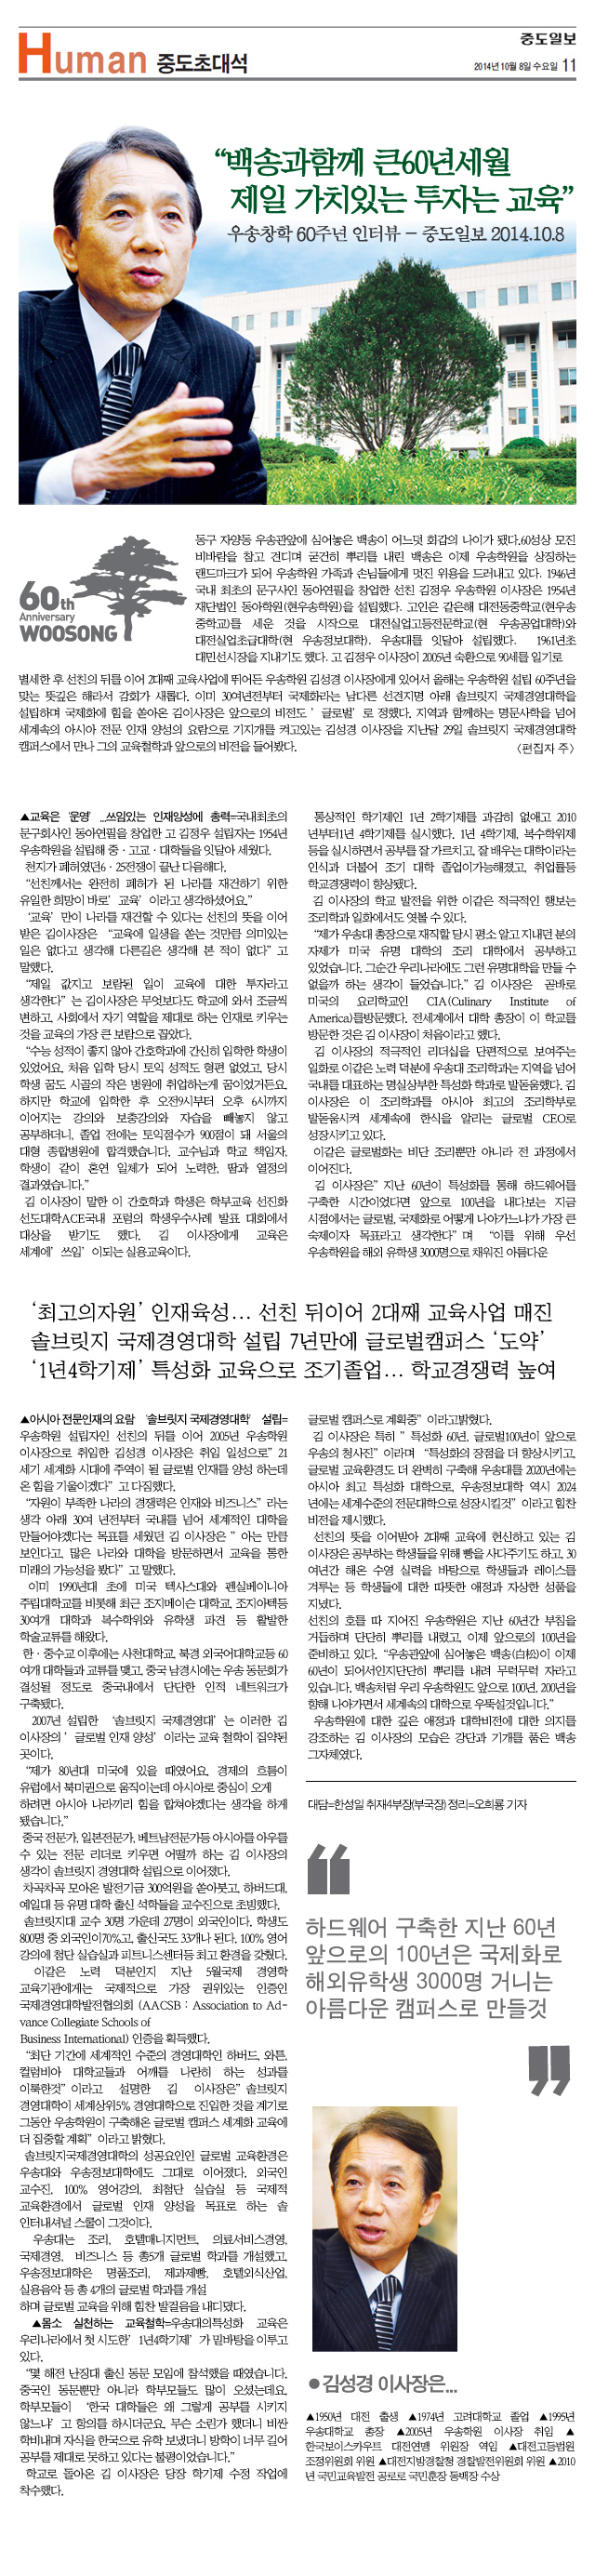 우송창학 60주년 인터뷰 - 중도일보 2014.10.8